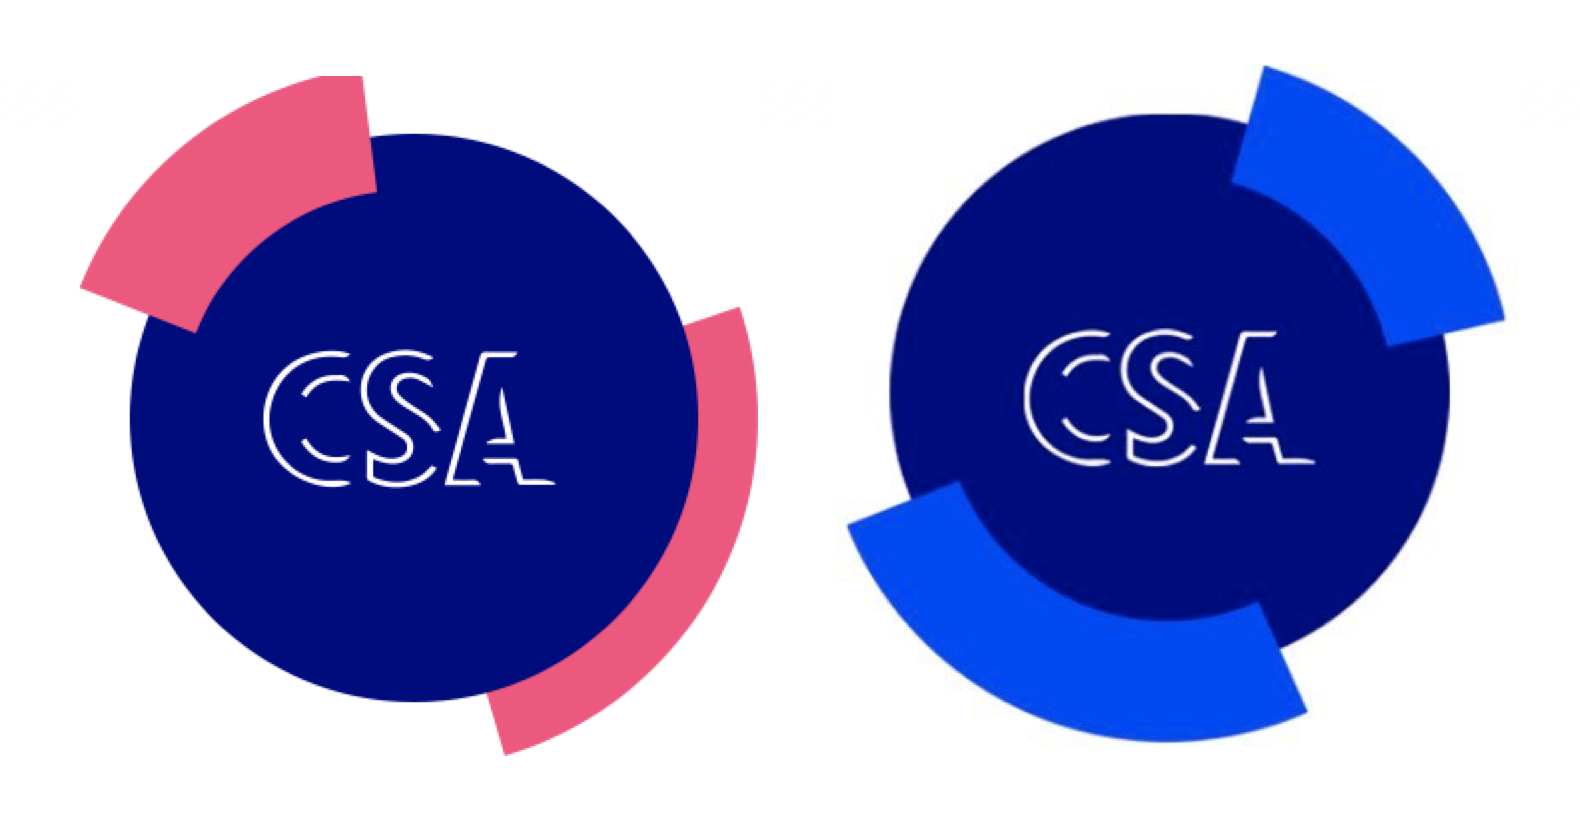 Le CSA fait évoluer son identité visuelle